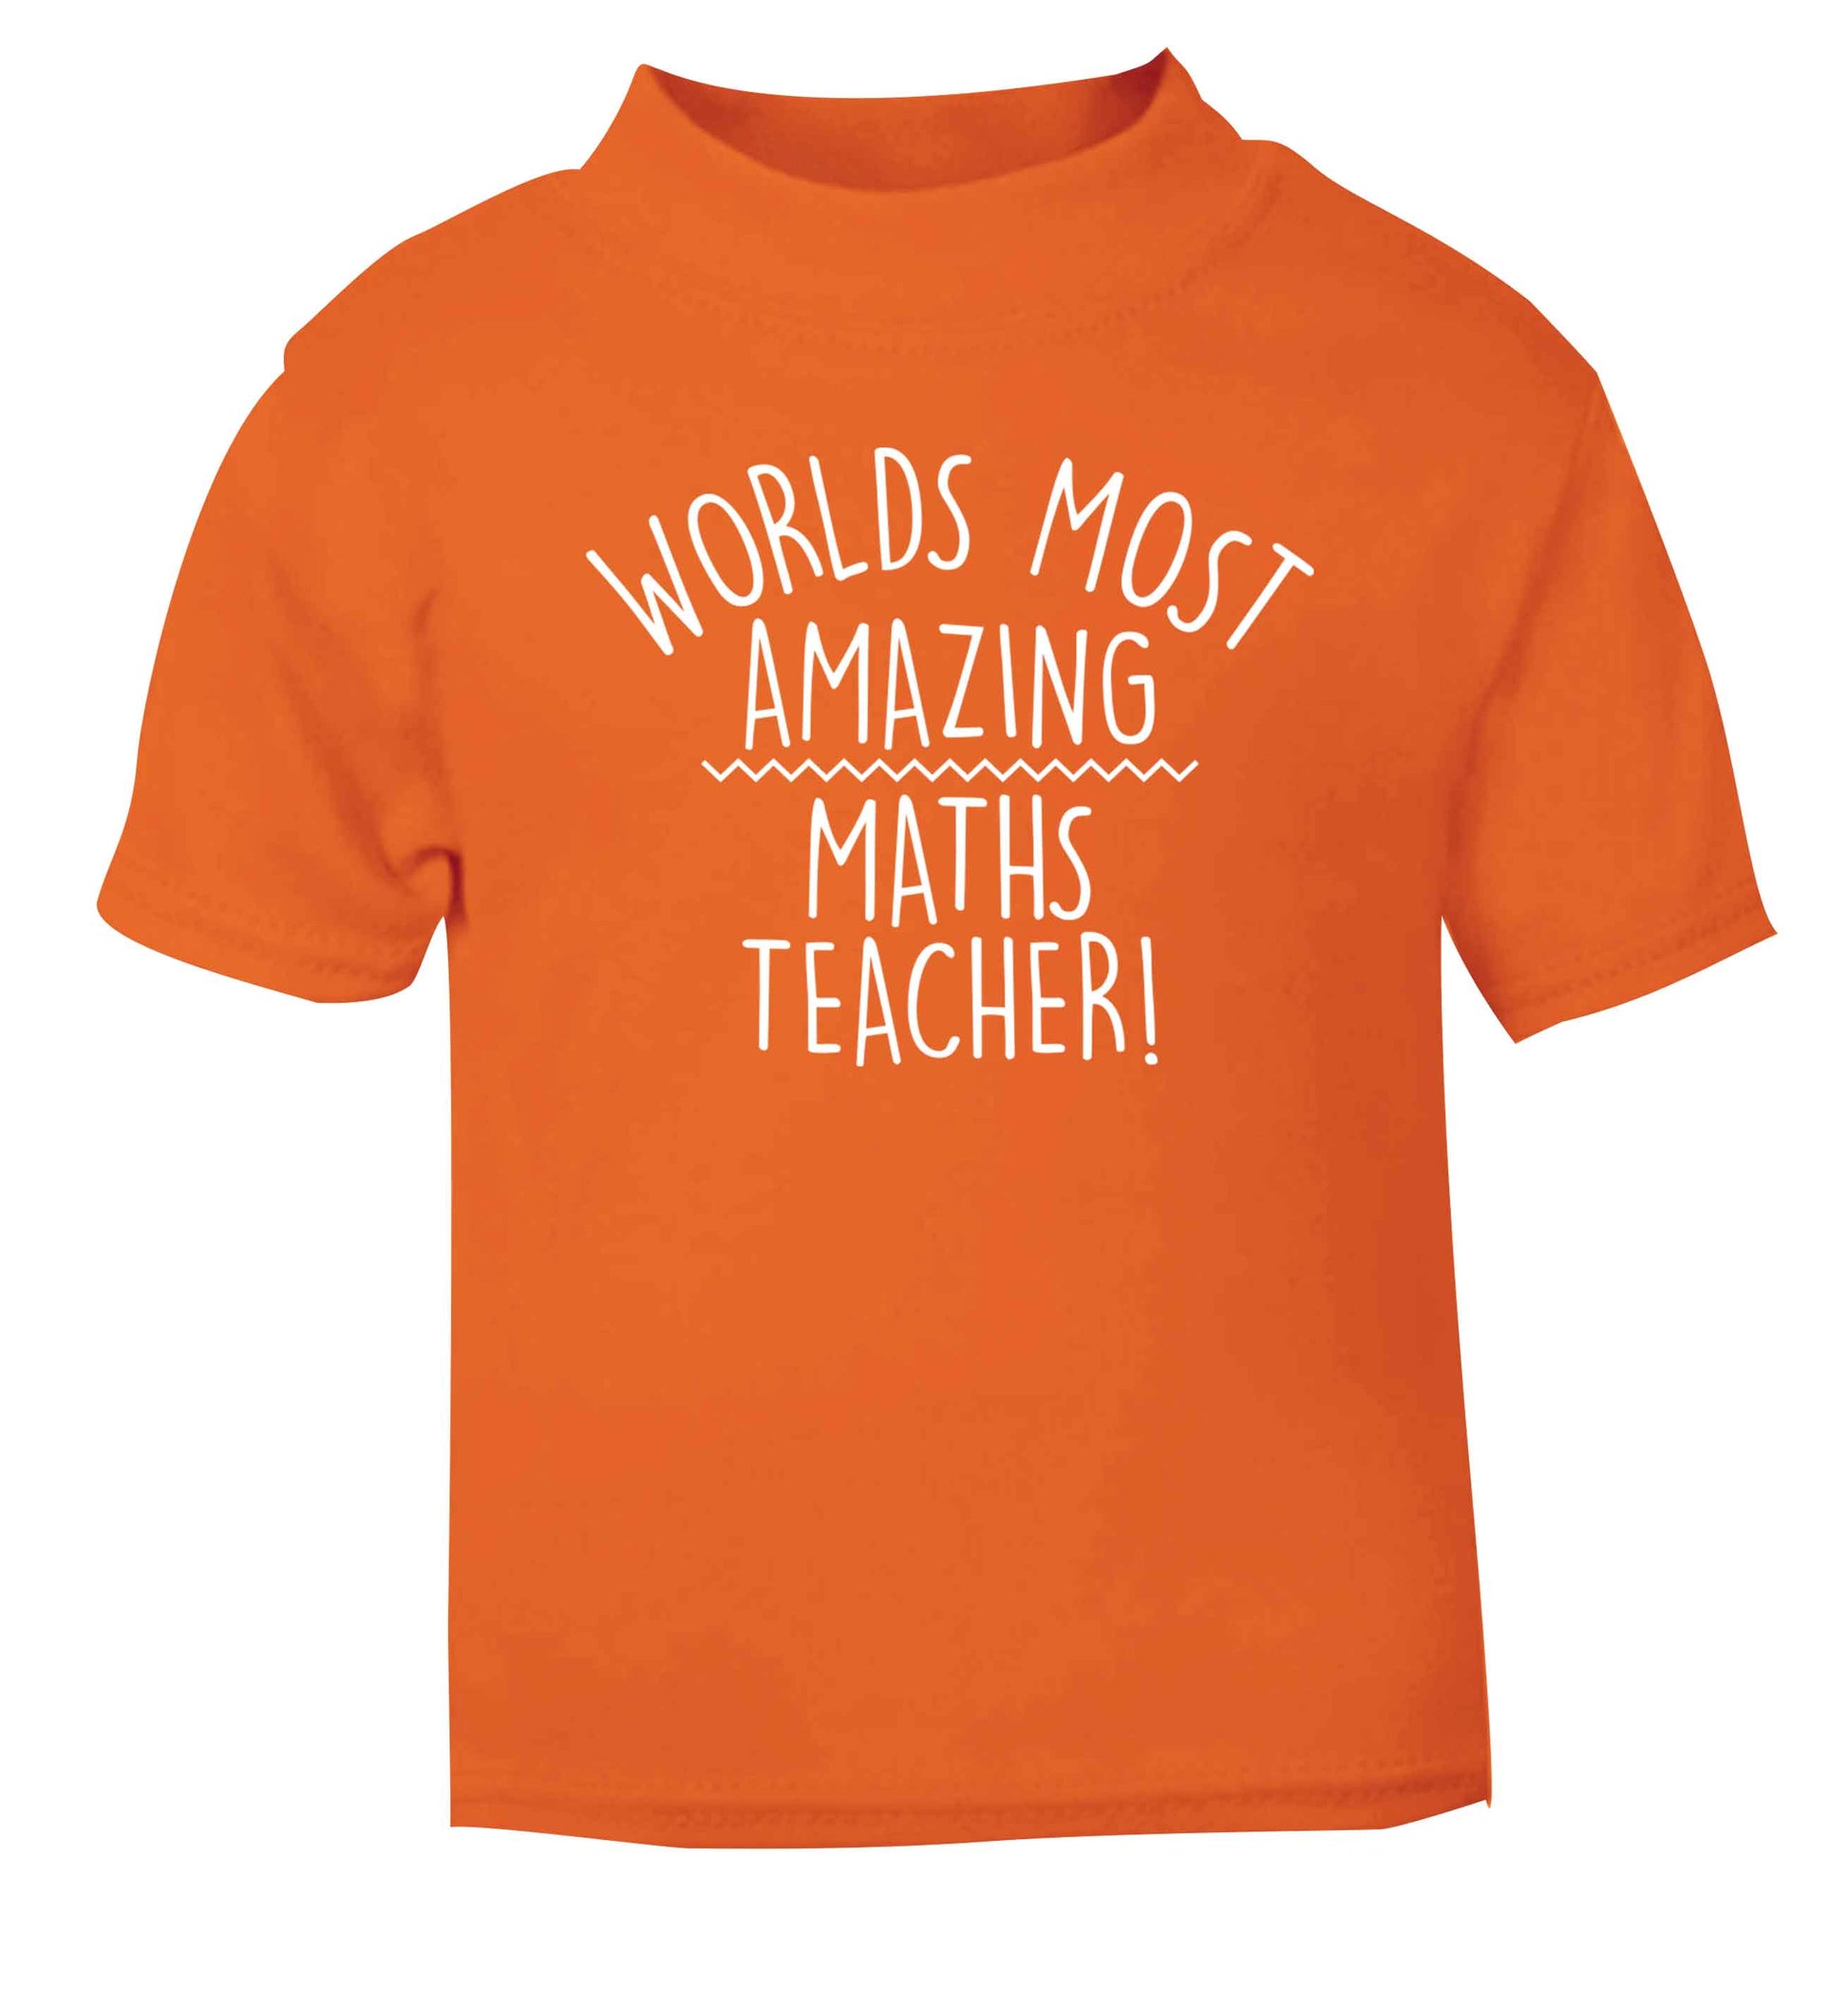 Worlds most amazing maths teacher orange baby toddler Tshirt 2 Years